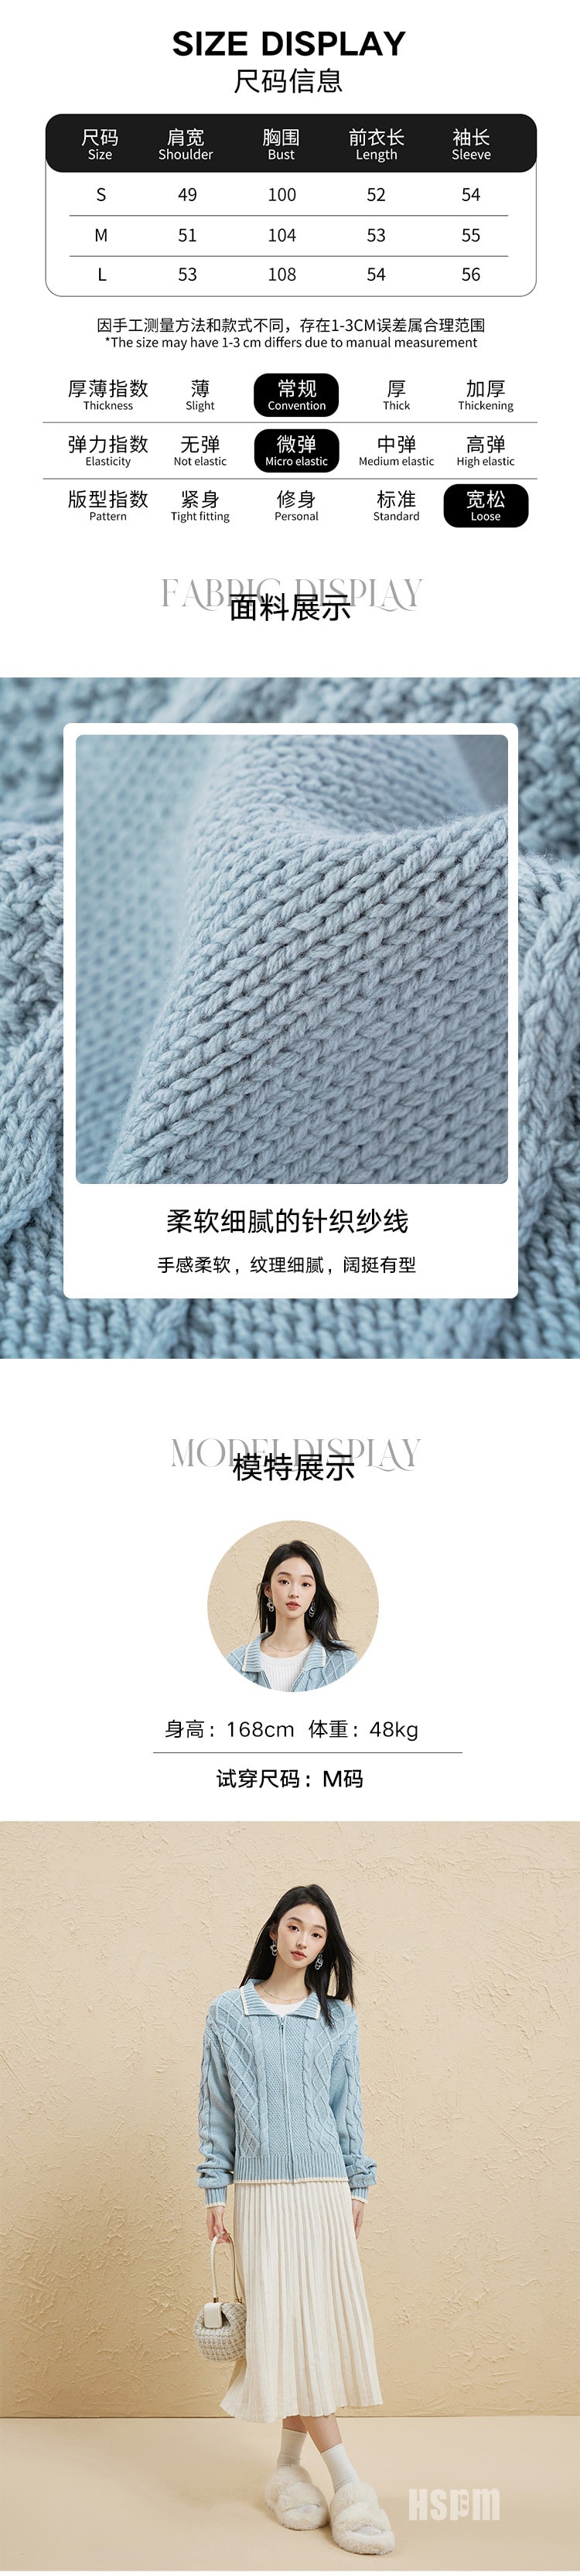 【中国直邮】HSPM 新款绞花肌理毛衣开衫 蓝灰色 M